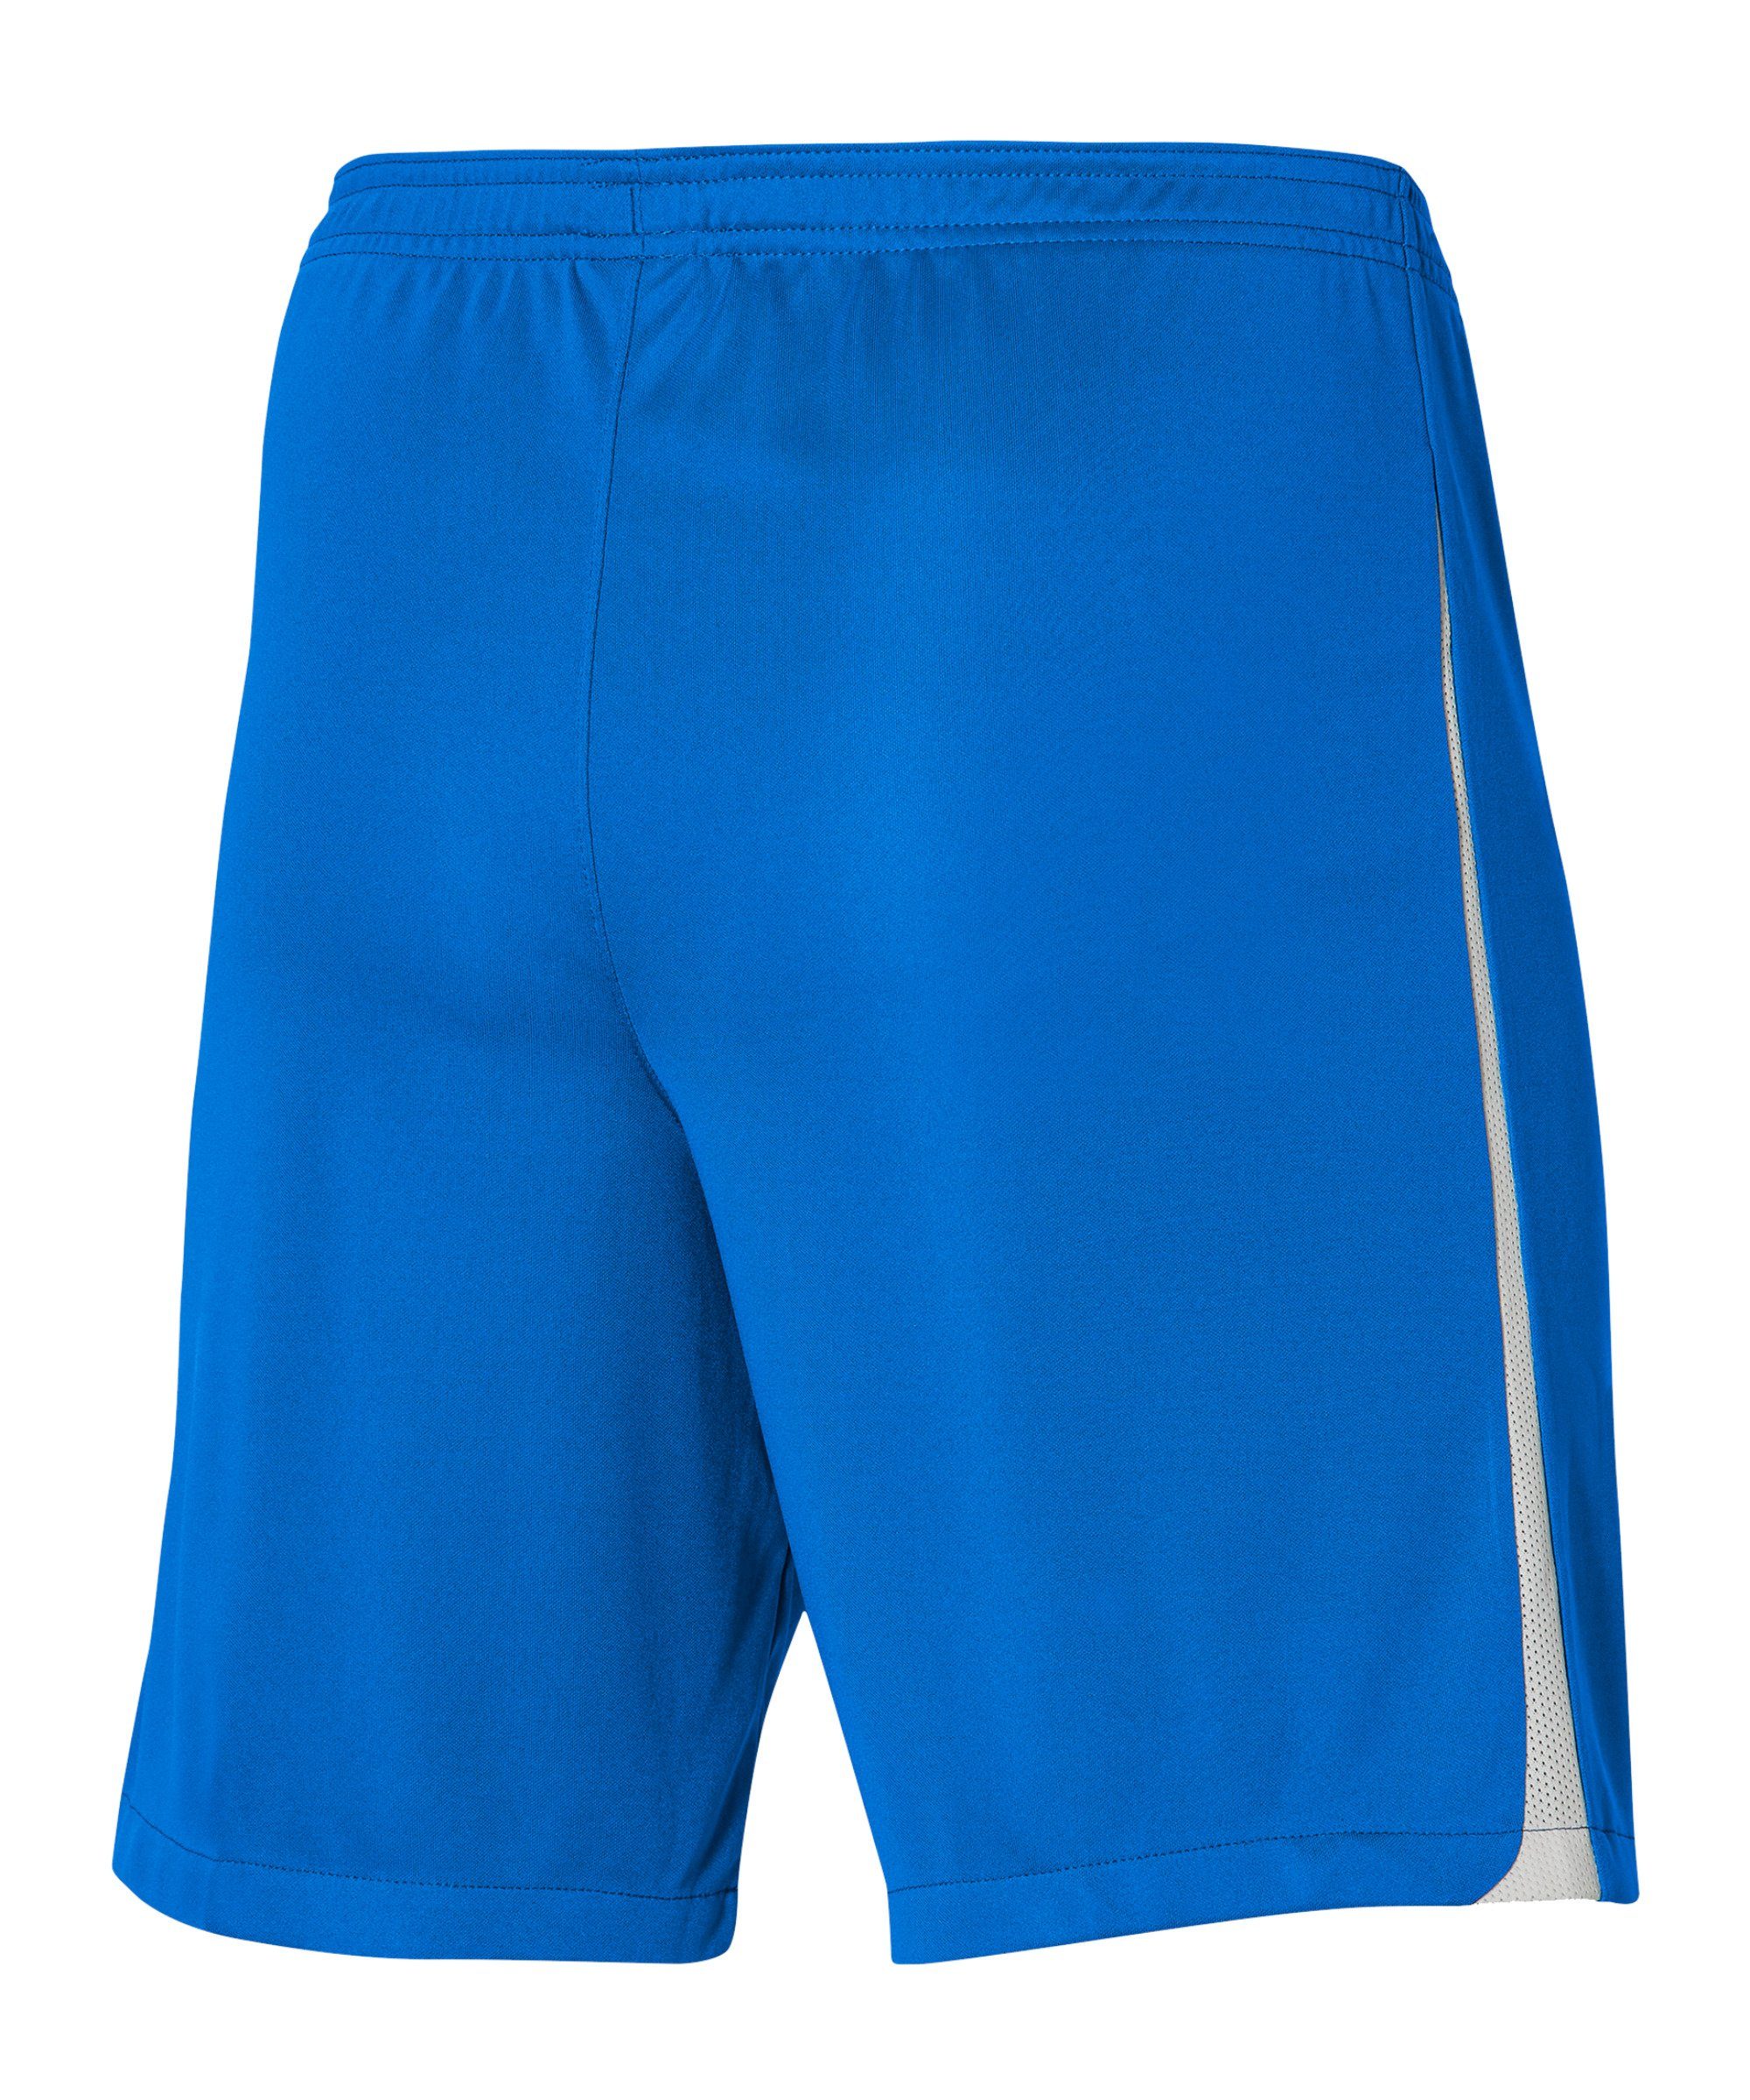 Kids Sporthose Nike League Short III dunkelblauweissweiss